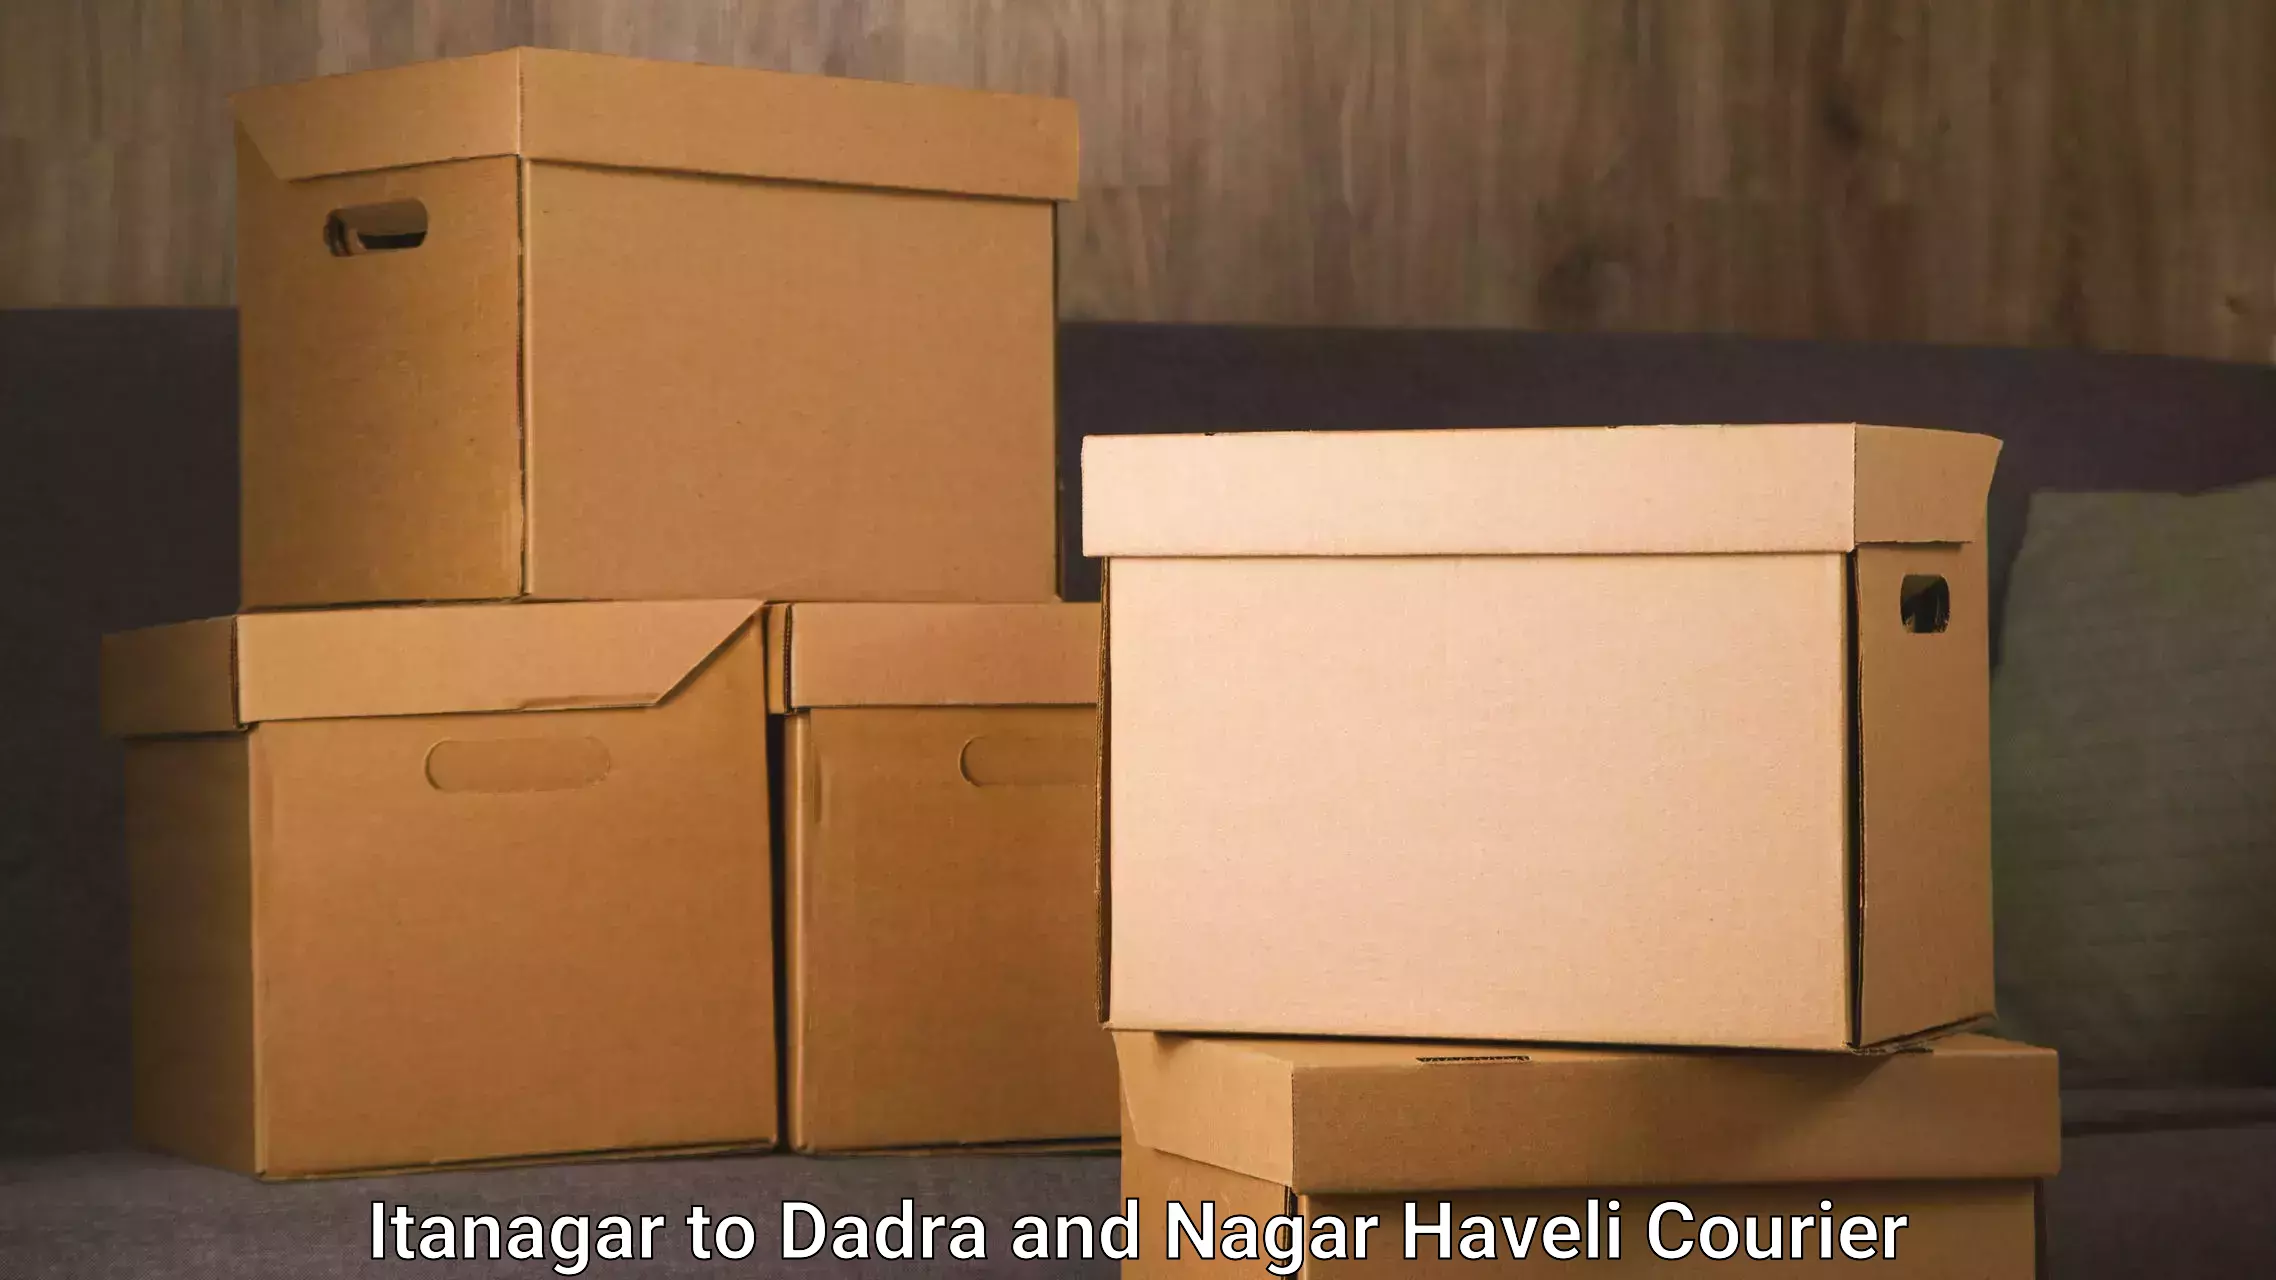 24-hour courier service Itanagar to Dadra and Nagar Haveli